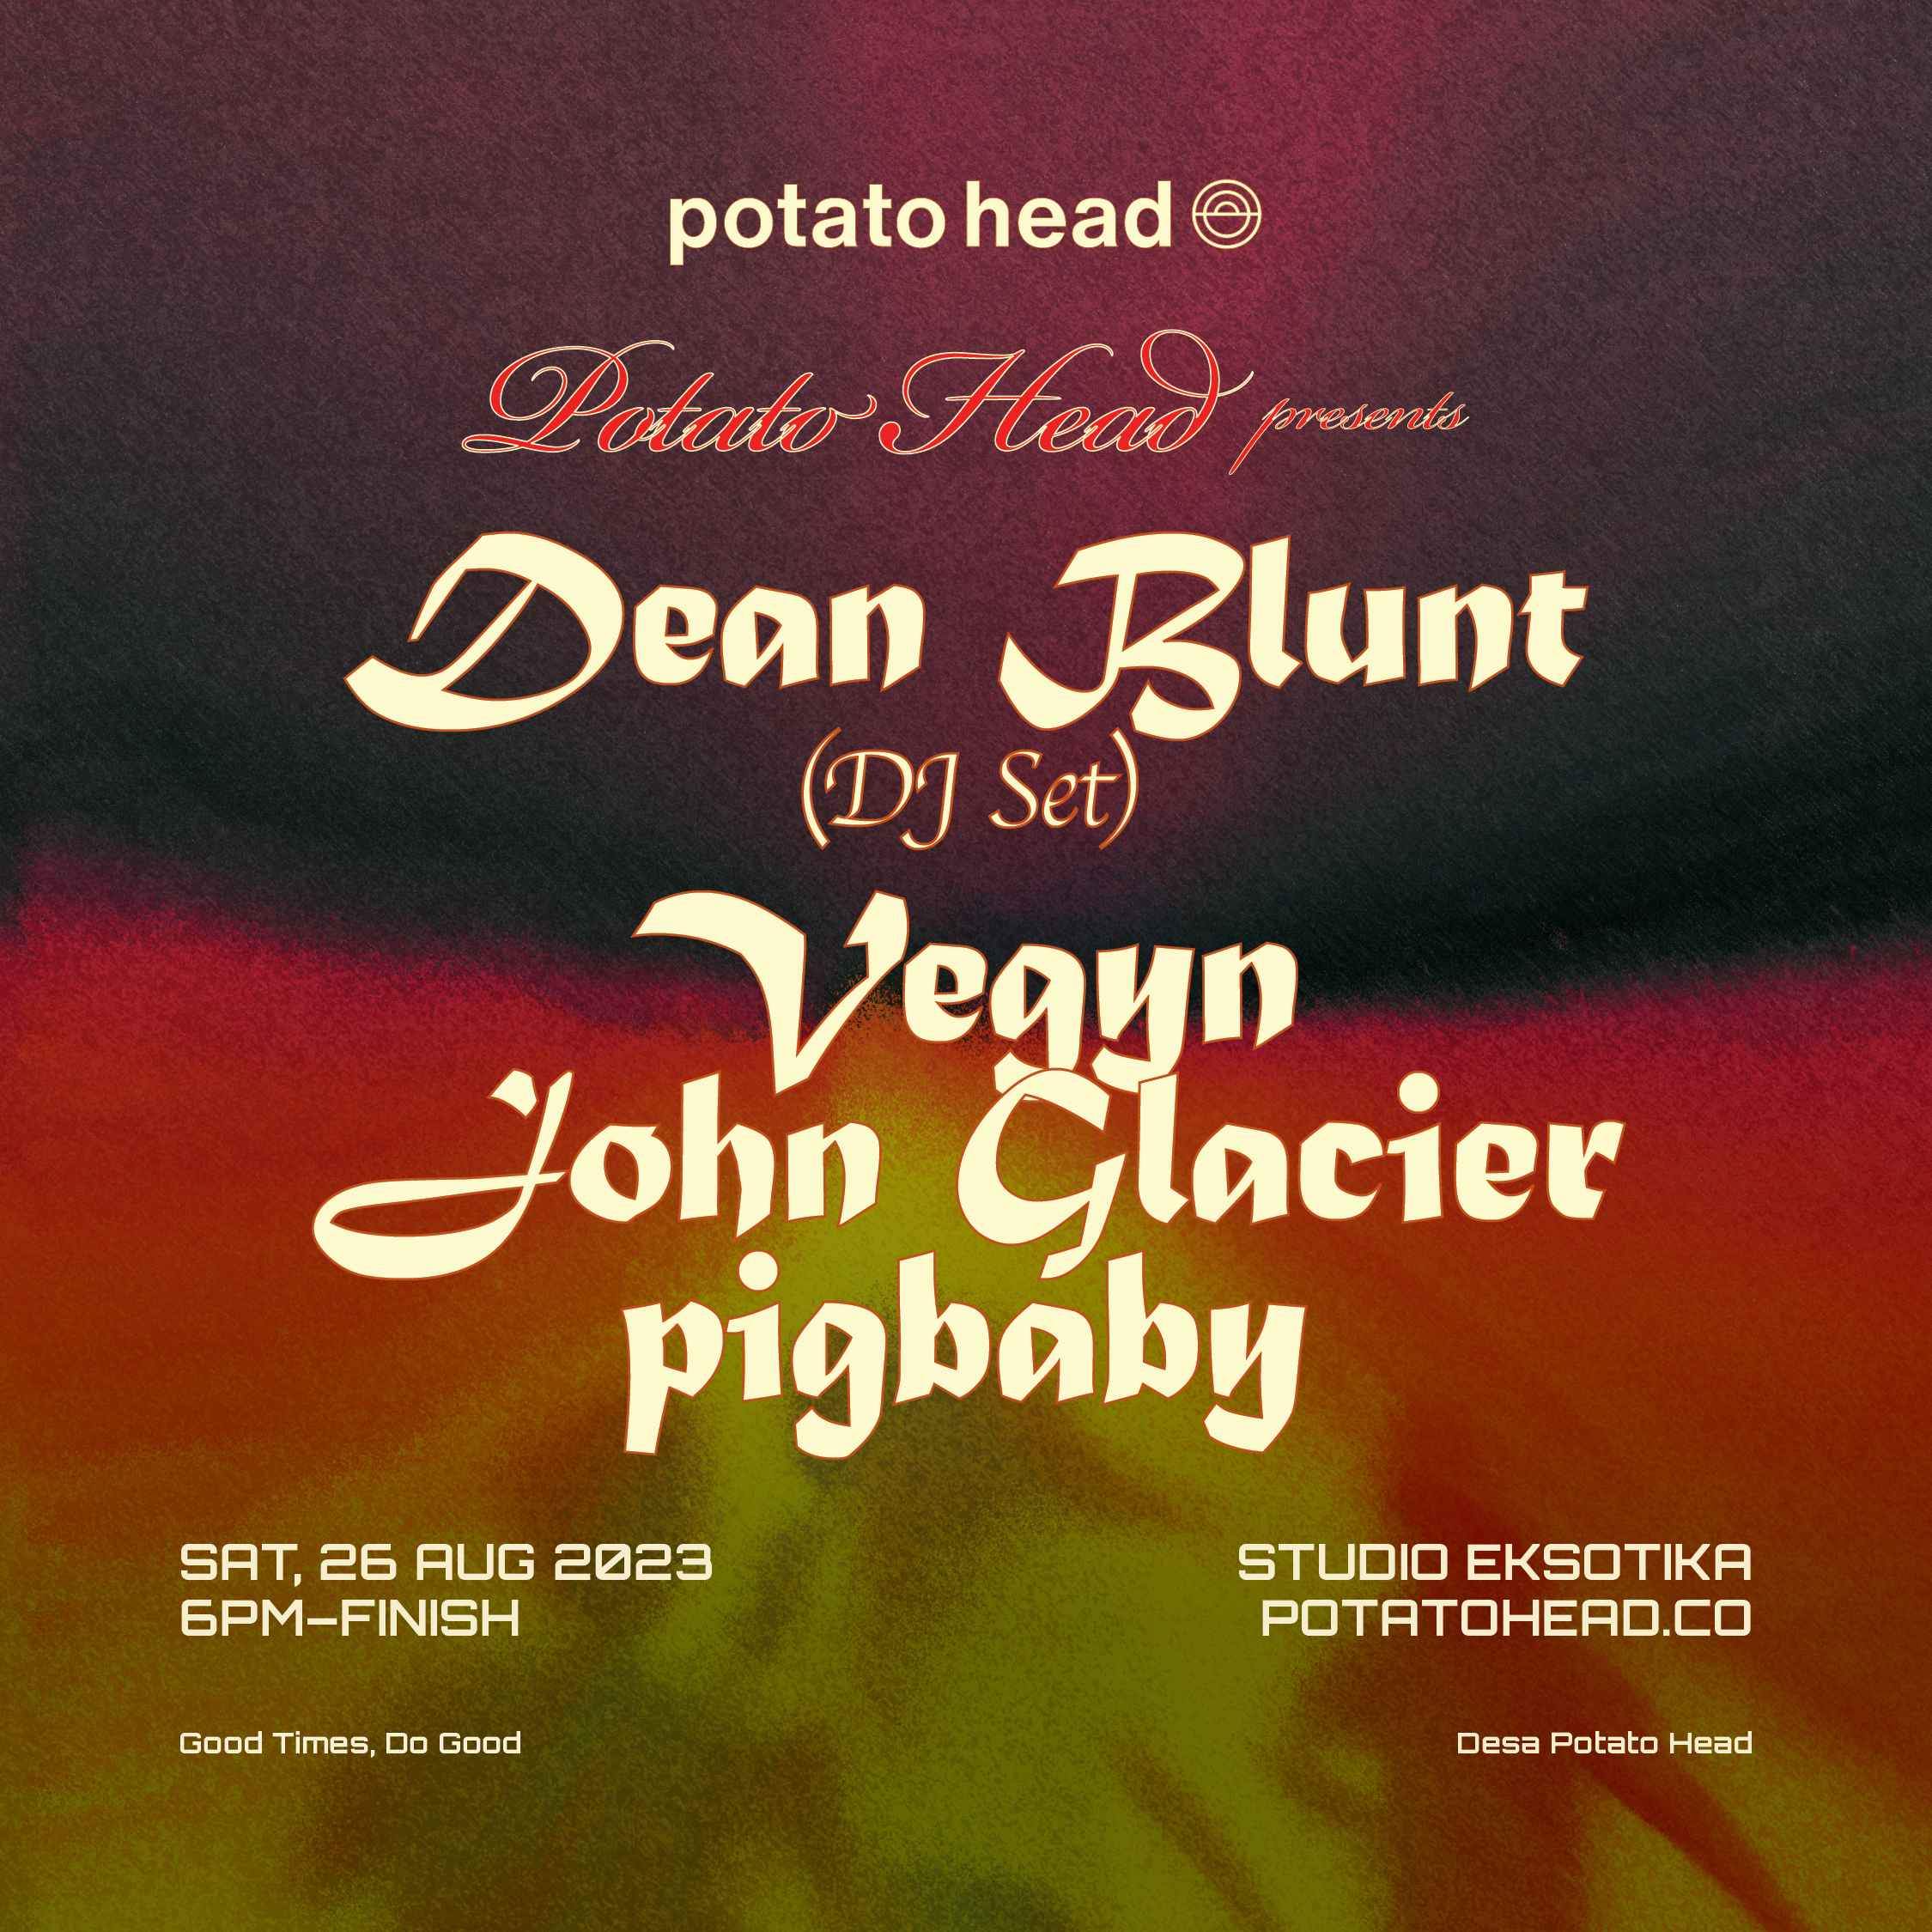 potato head presents: Dean Blunt (dj set), Vegyn and many more - Página frontal